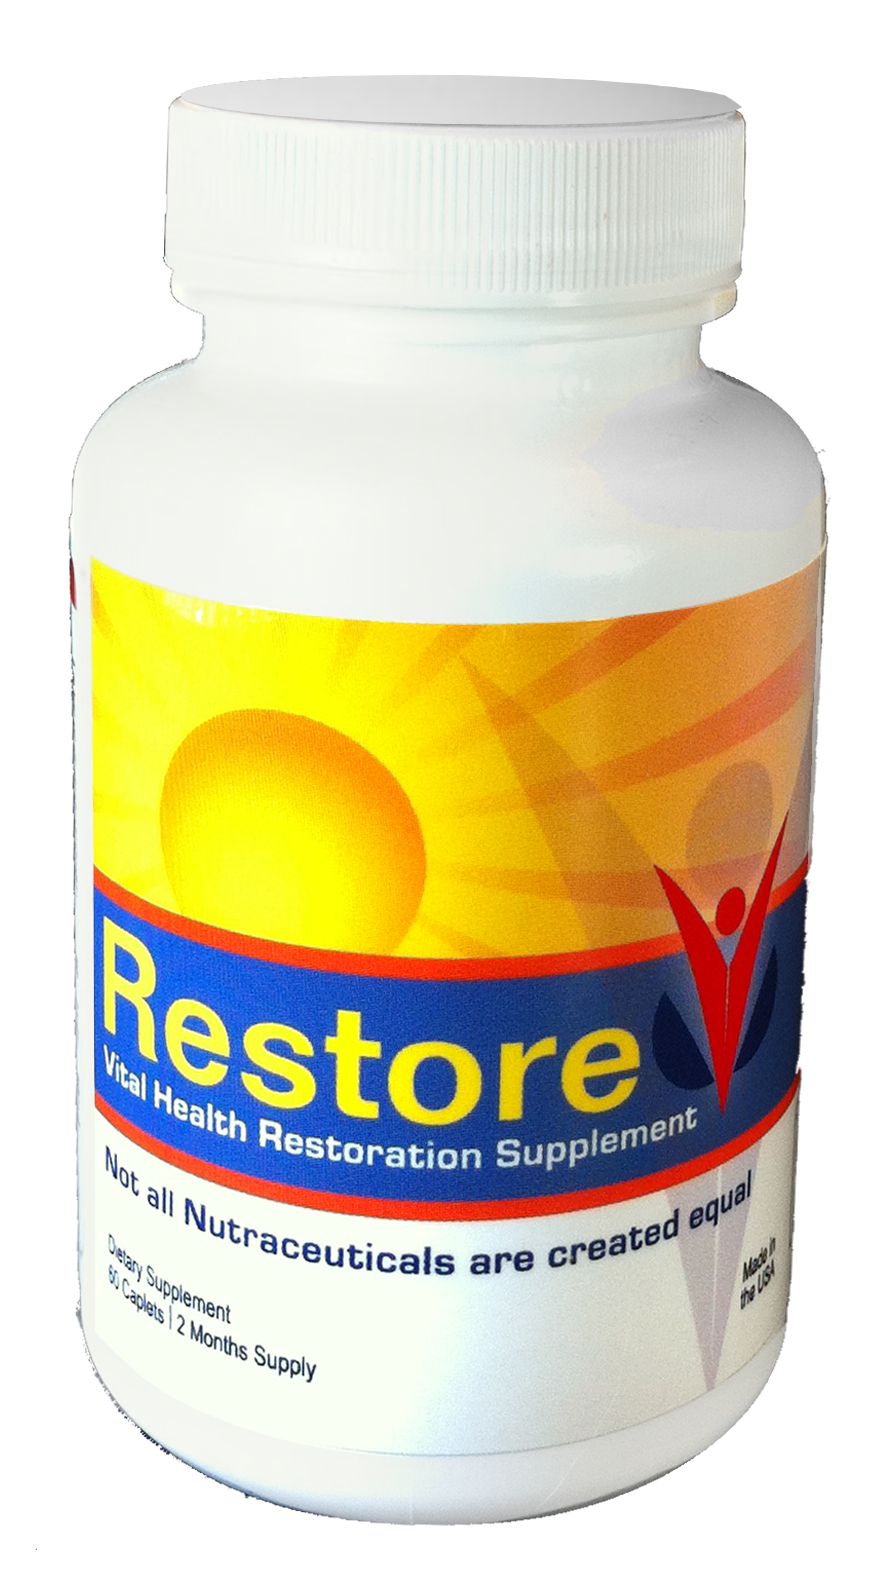 RestoreV Neuropathy Supplement